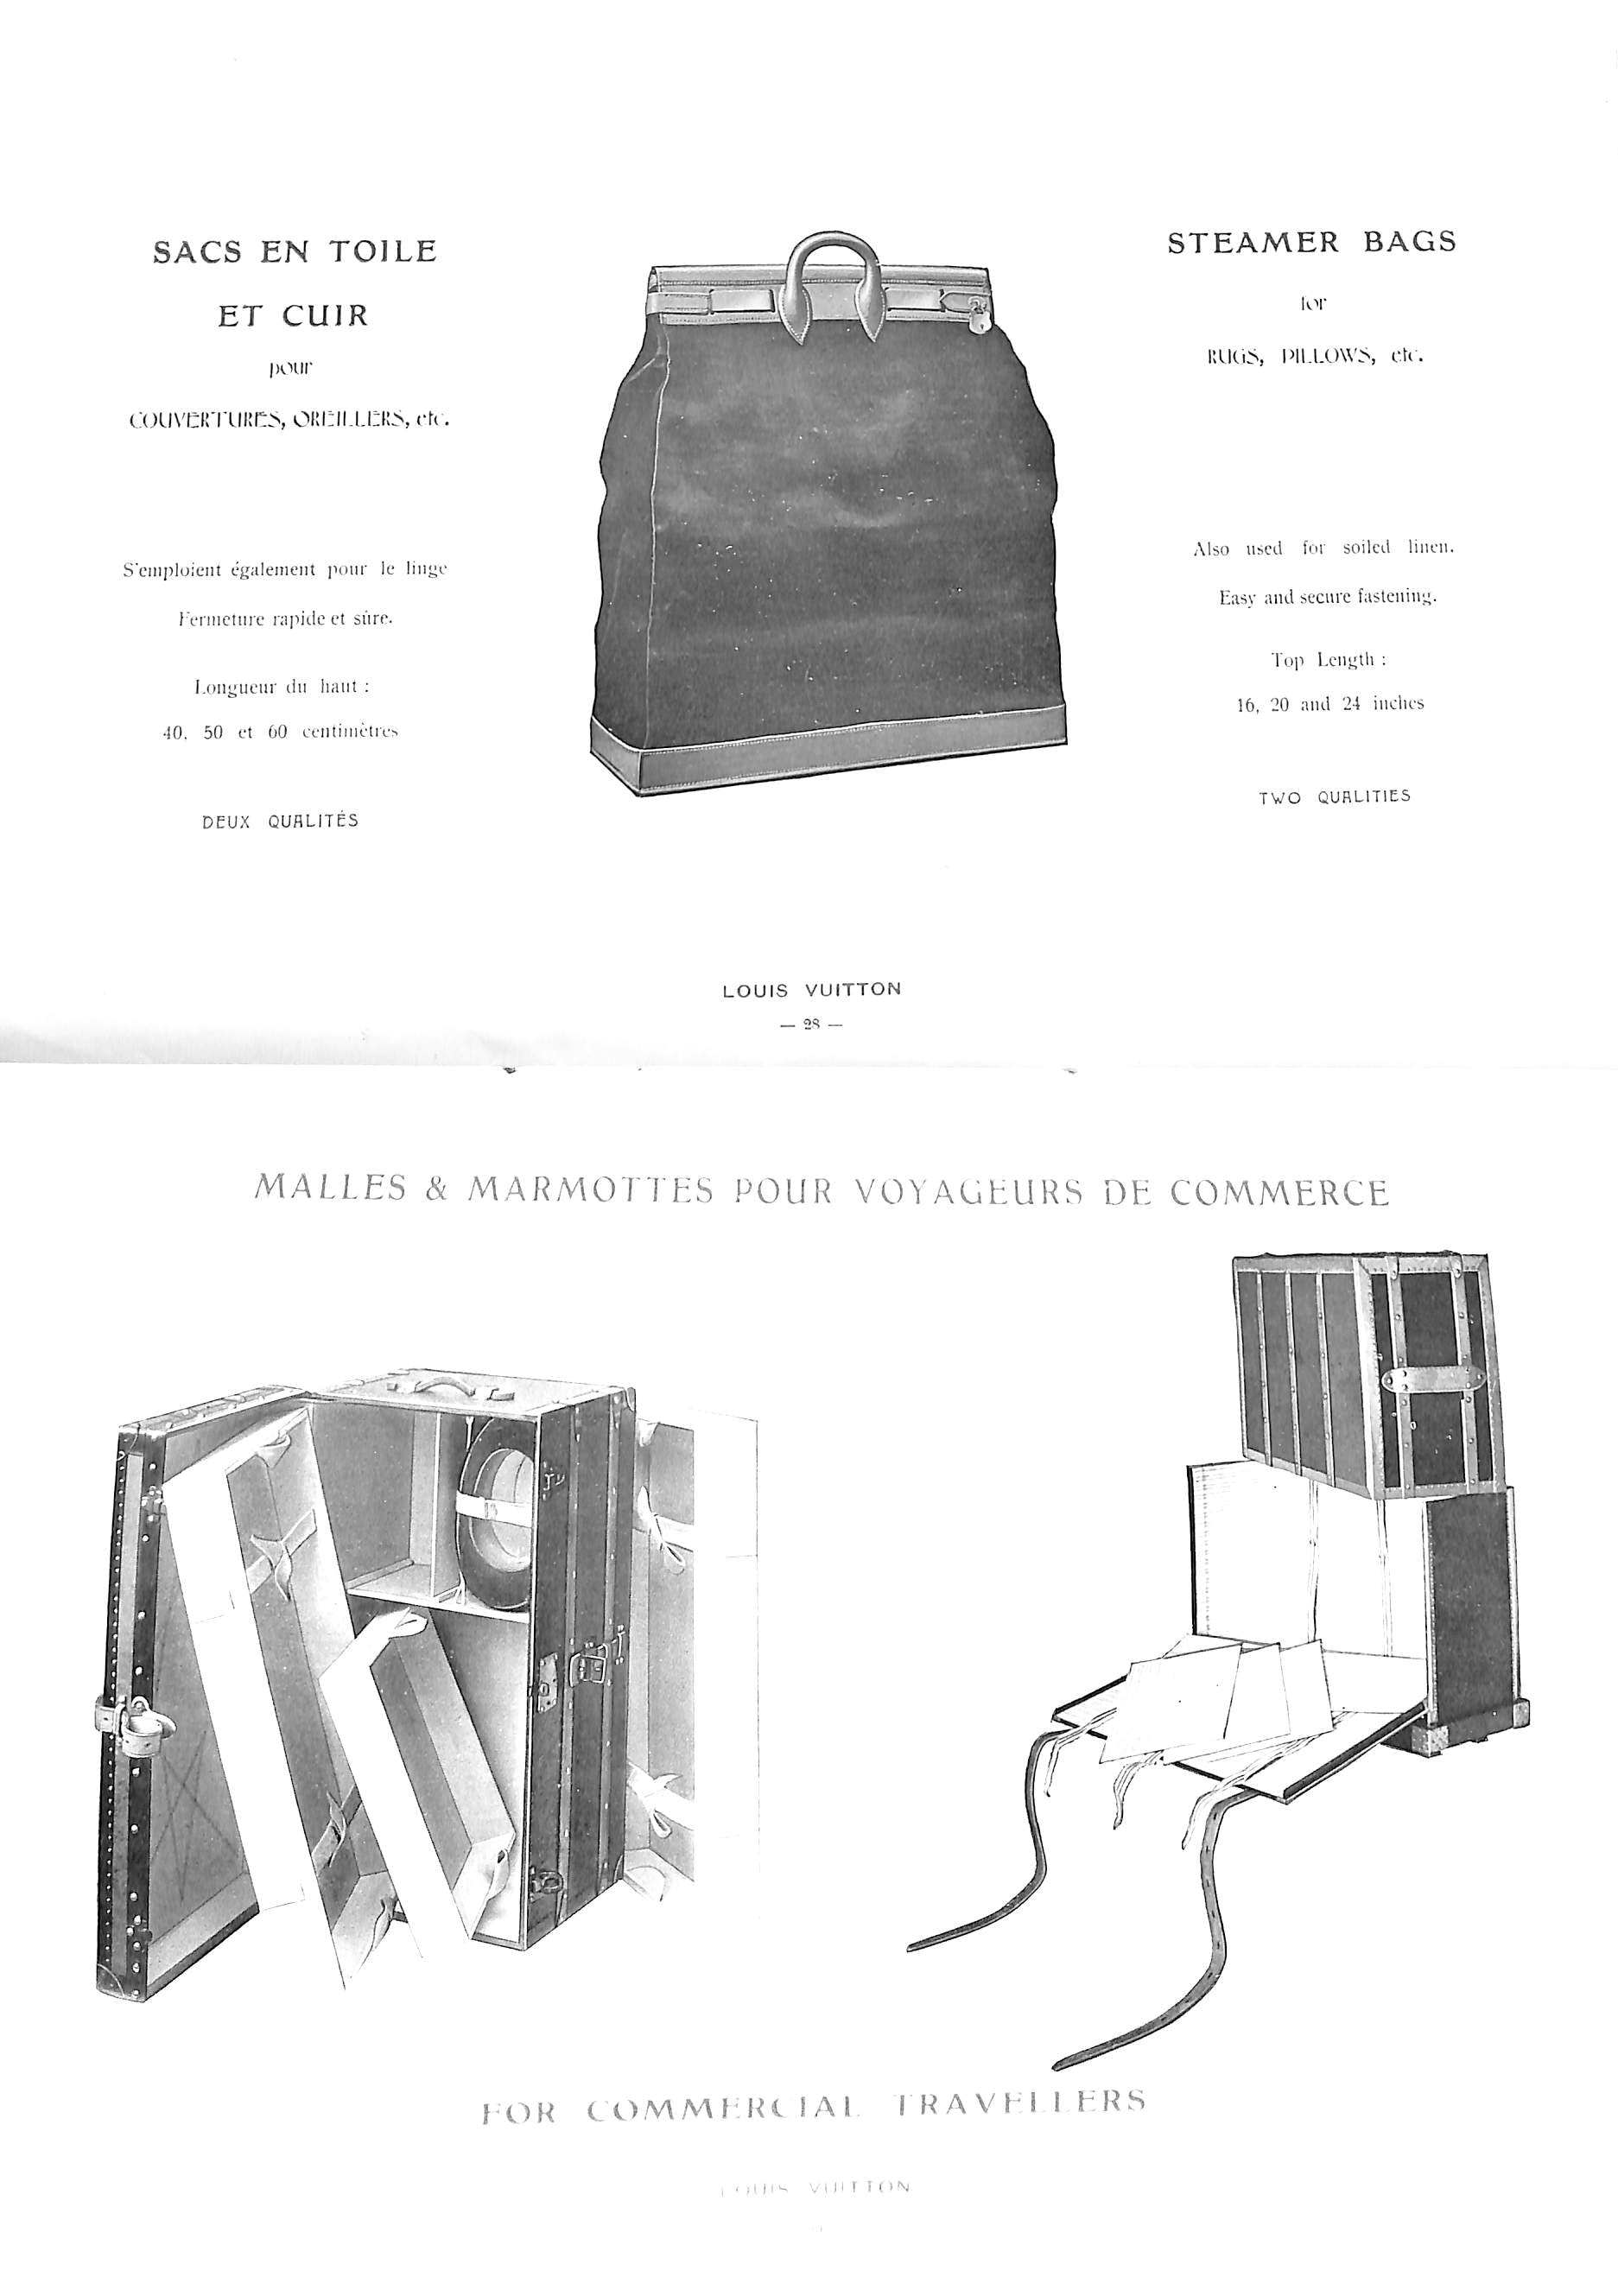 Louis Vuitton: Fabrique d'Articles De Voyage 1903 (SOLD)